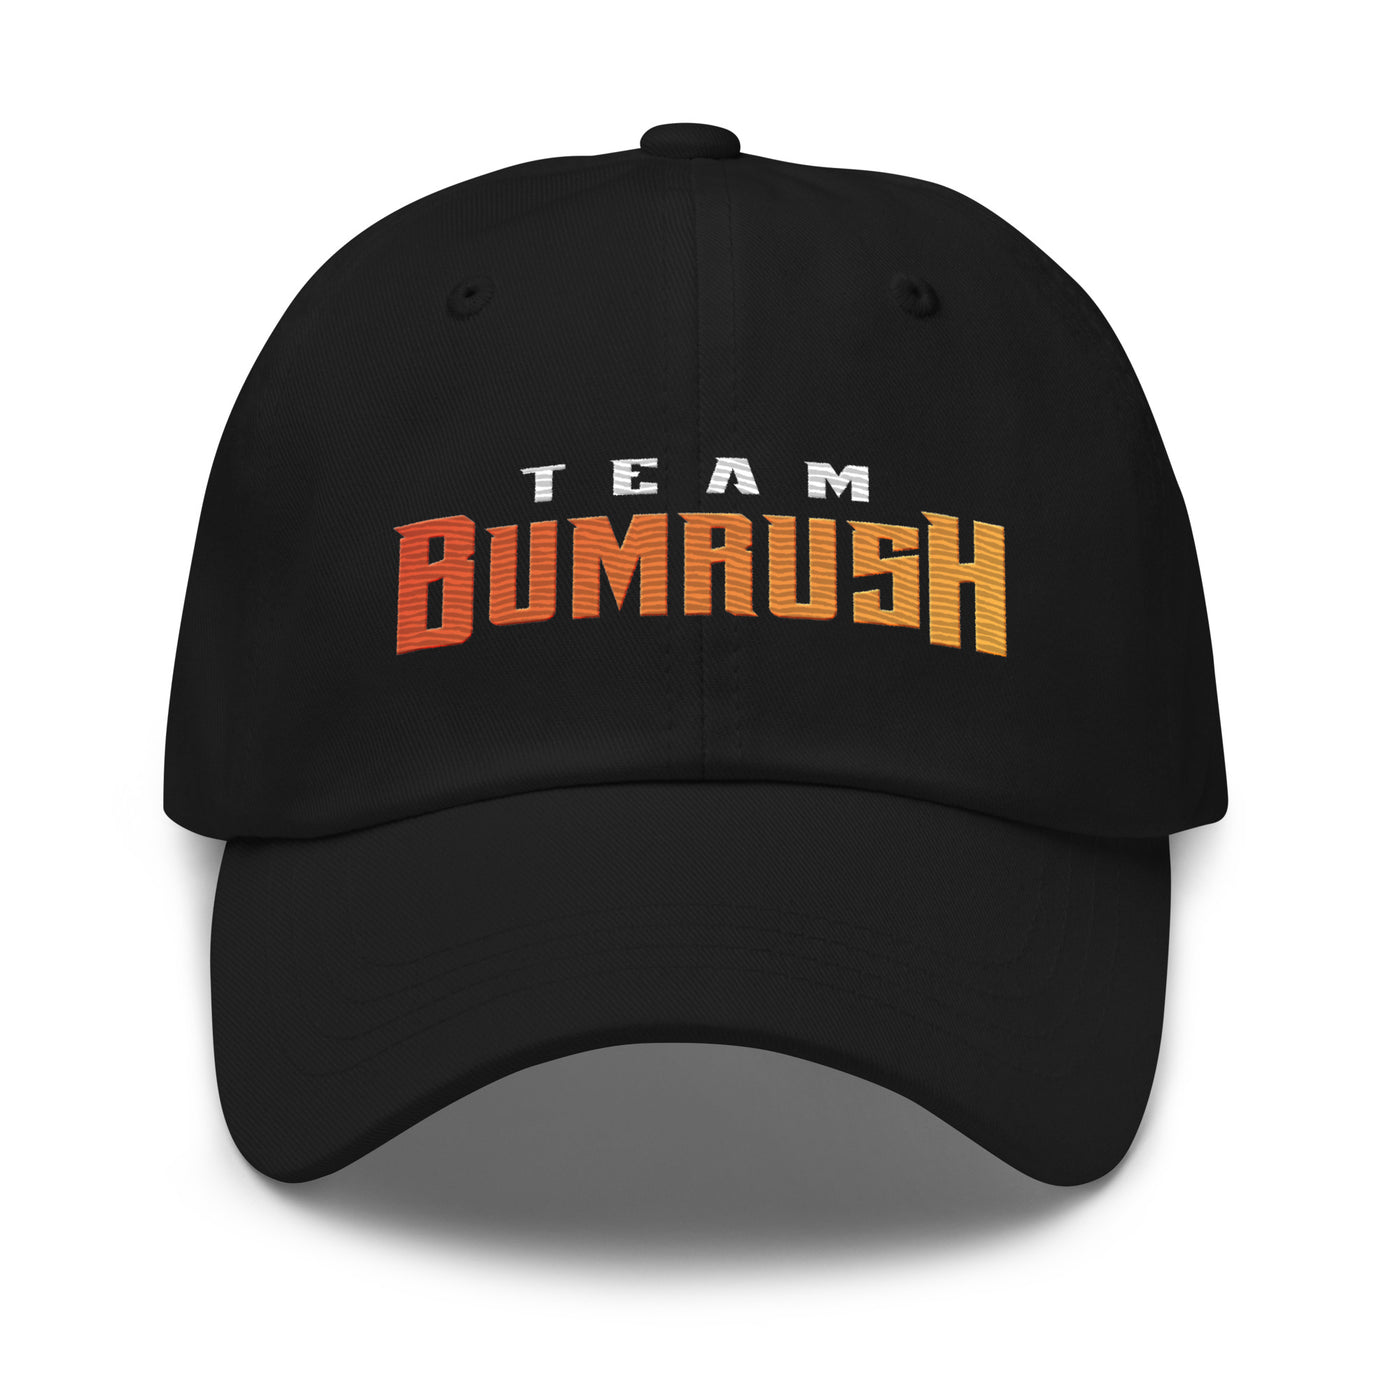 Bumrush Dad hat